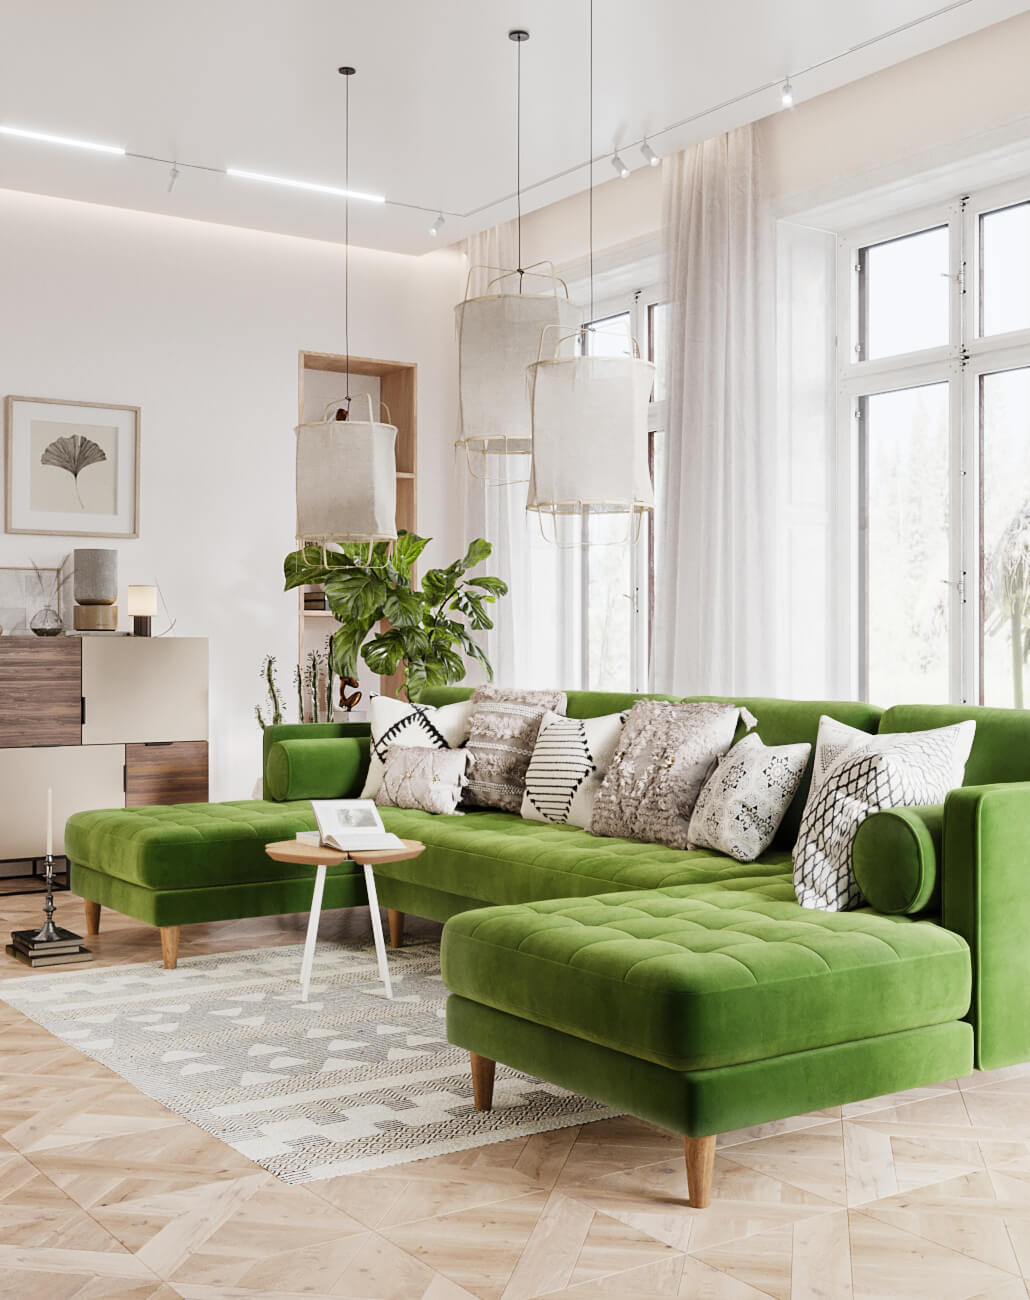 Зеленая мягкая мебель в интерьере